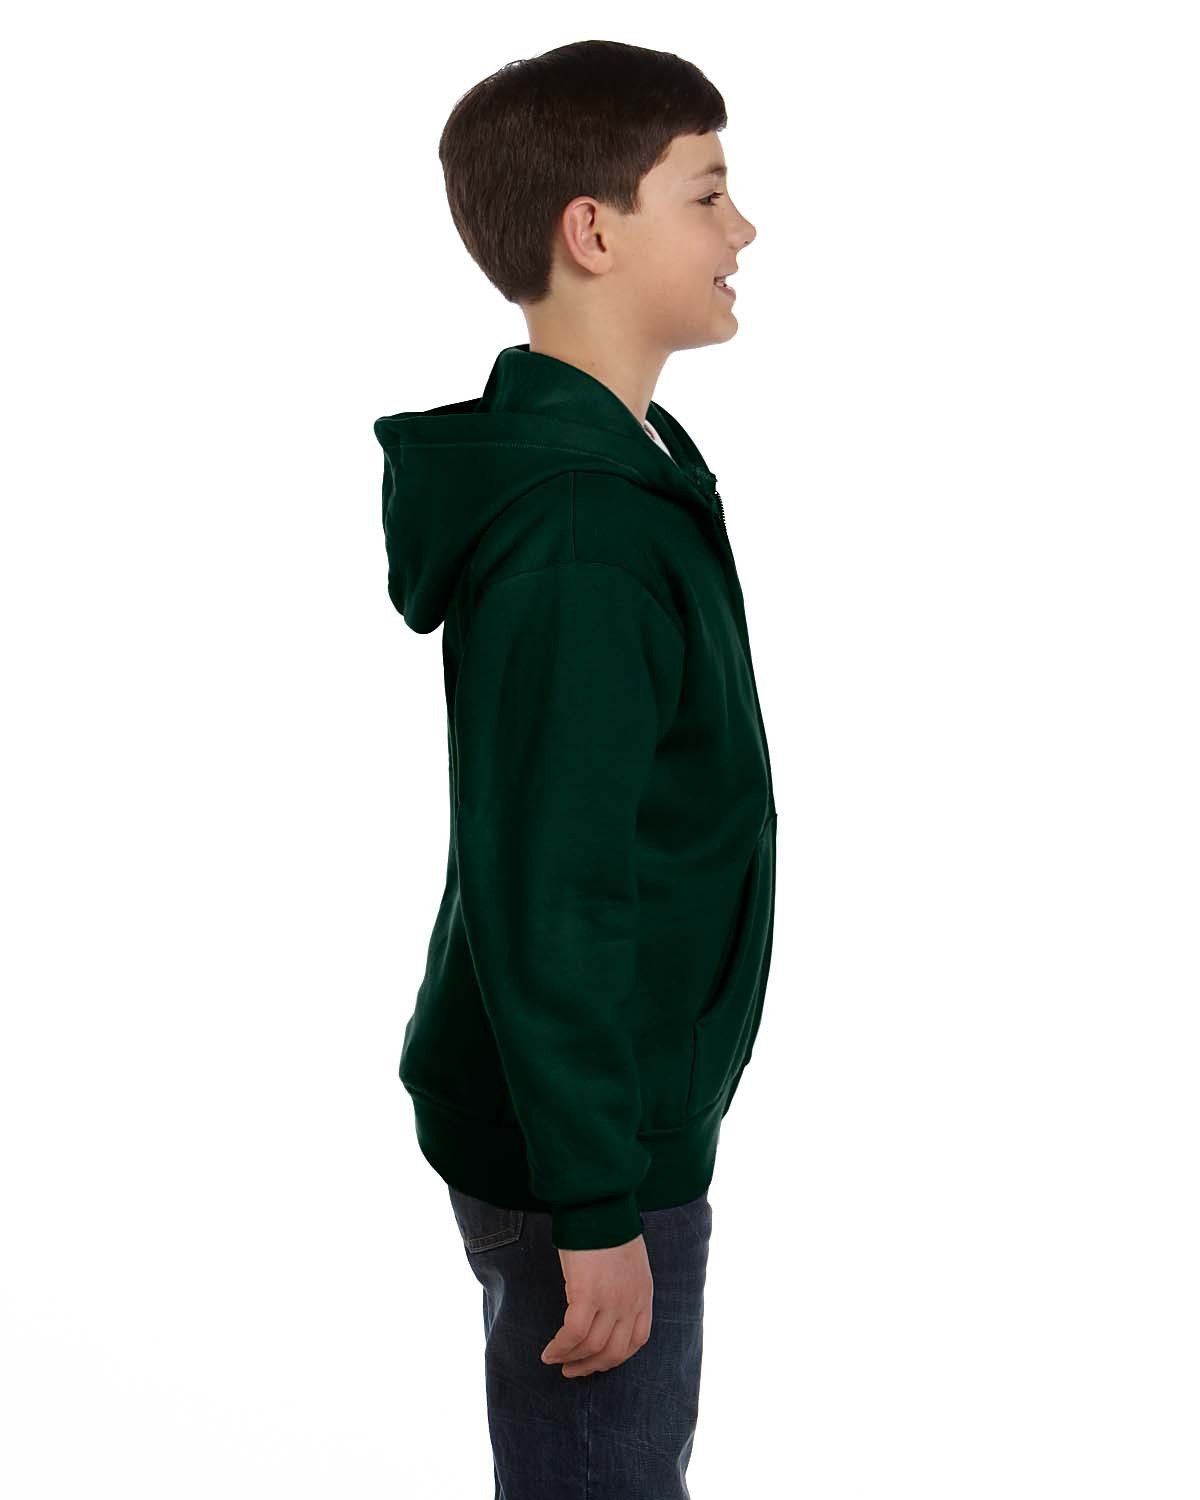 'Hanes P480 Comfortblend EcoSmart Full Zip Kids 7.8 Oz Hoodie Sweatshirt'